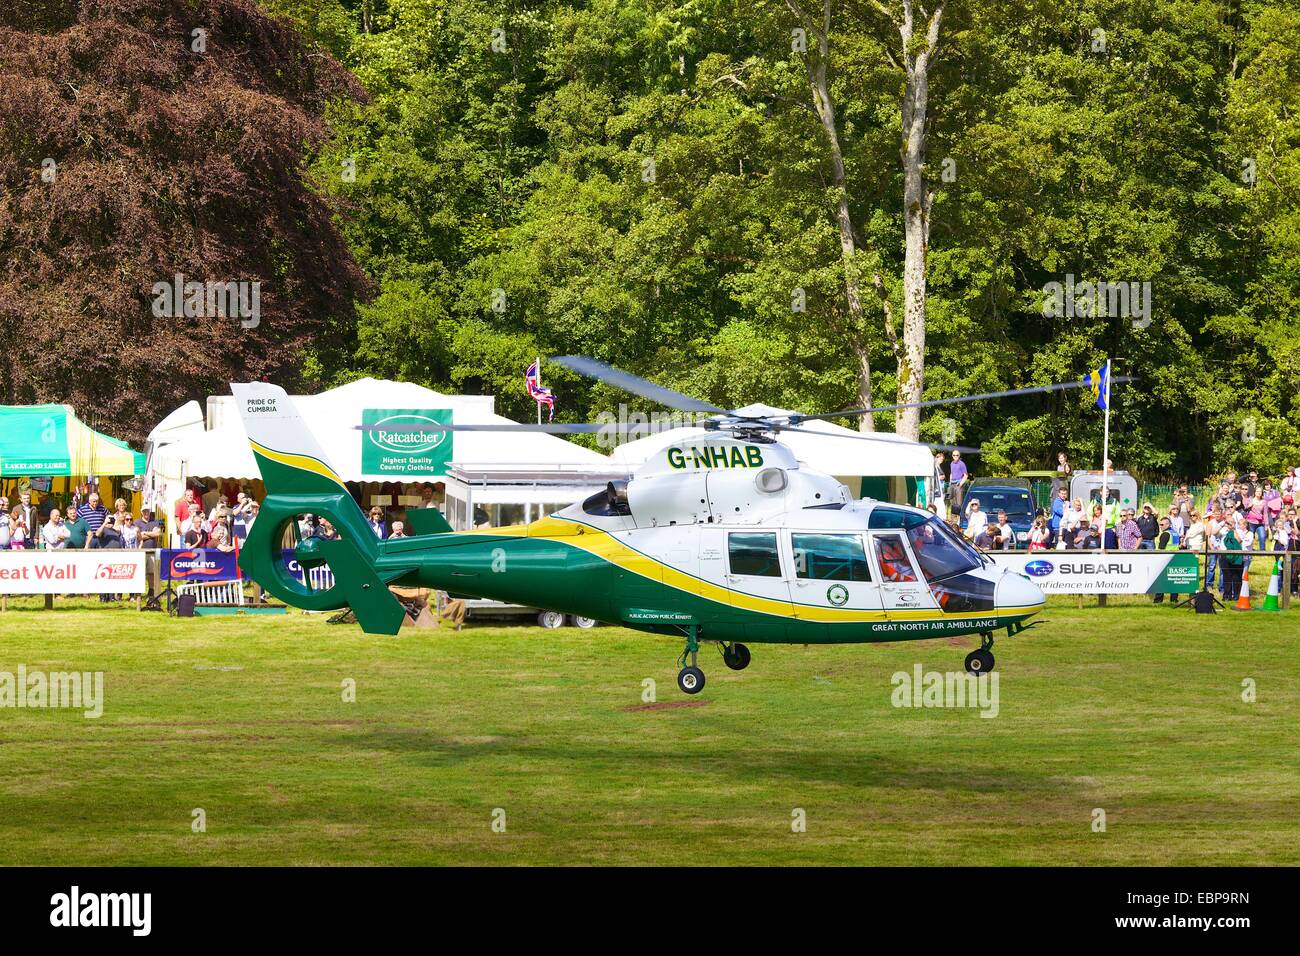 Grande Nord Air Ambulance, G-NHAB, orgoglio della Cumbria, elicottero in atterraggio a Lowther Show. Foto Stock